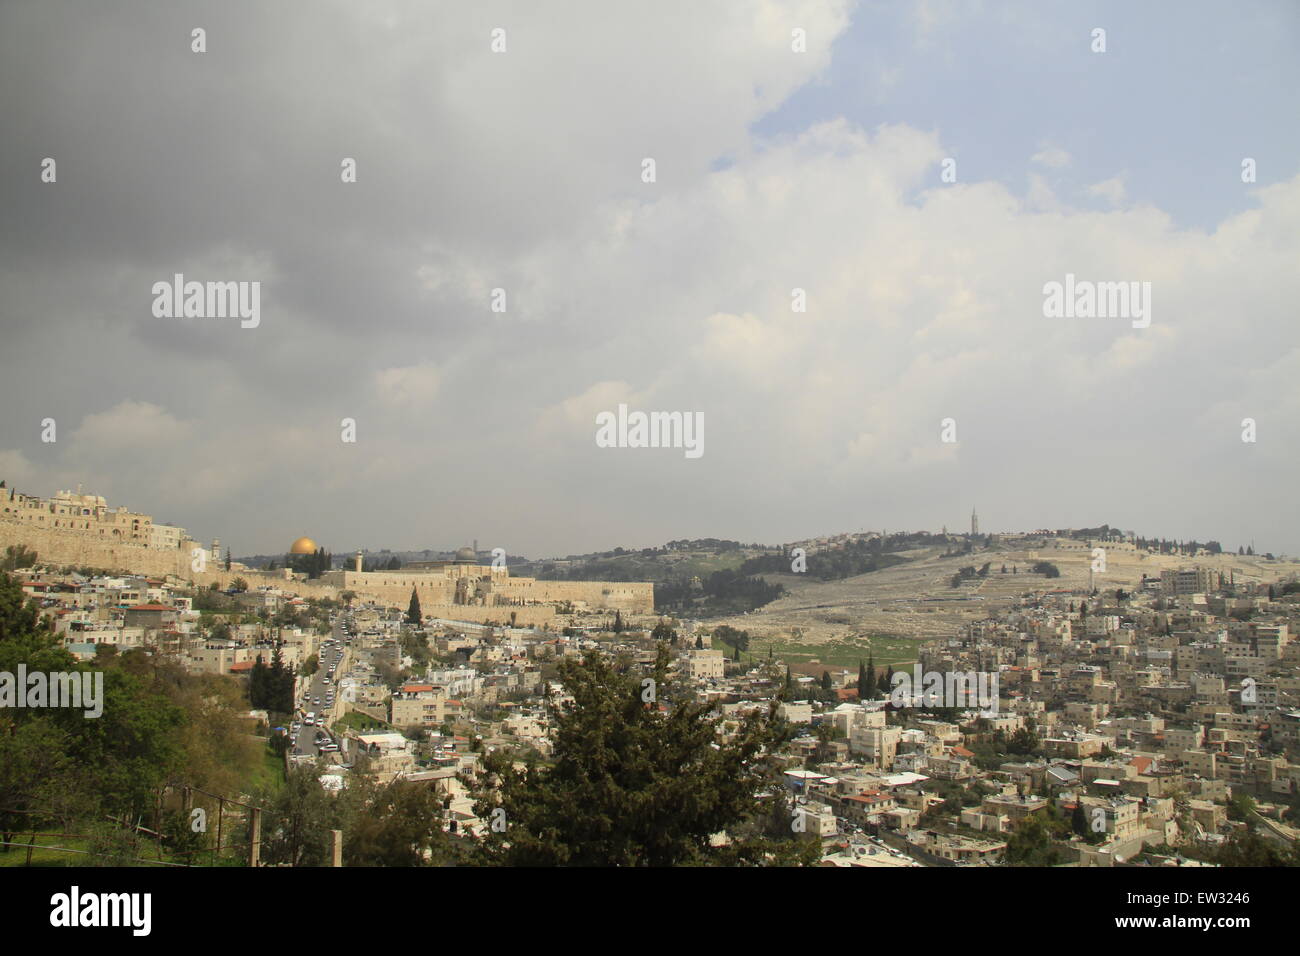 Israël, Jérusalem, une vue sur le quartier de Silwan, mont du Temple et le Mont des Oliviers de l'église de Saint Pierre en Gallicantu sur la pente de la montagne de Sion Banque D'Images